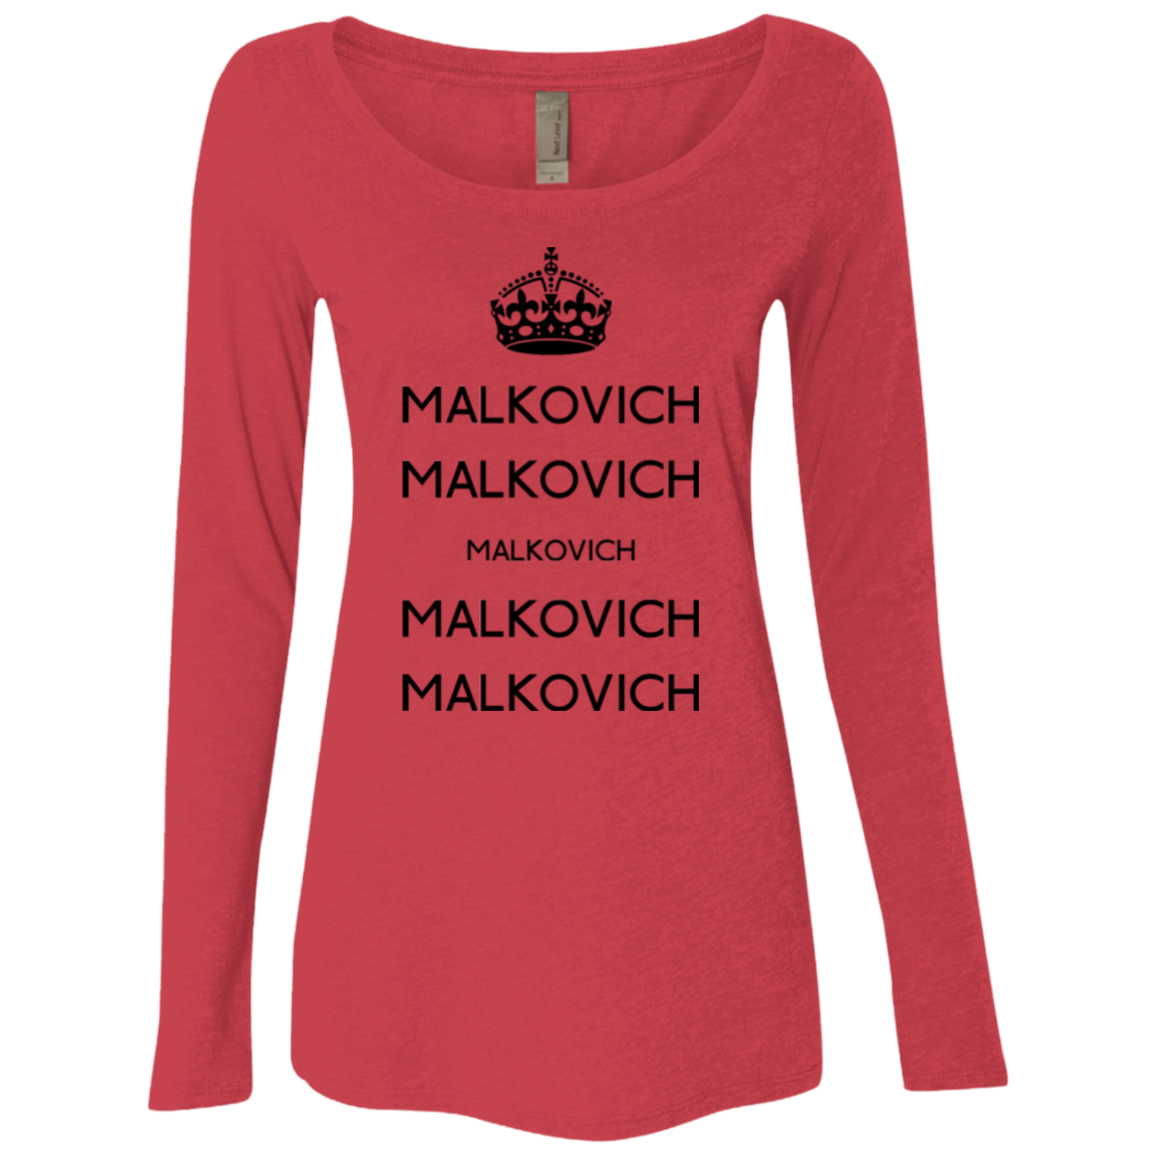 Keep Calm Malkovich Women's Triblend Long Sleeve Shirt